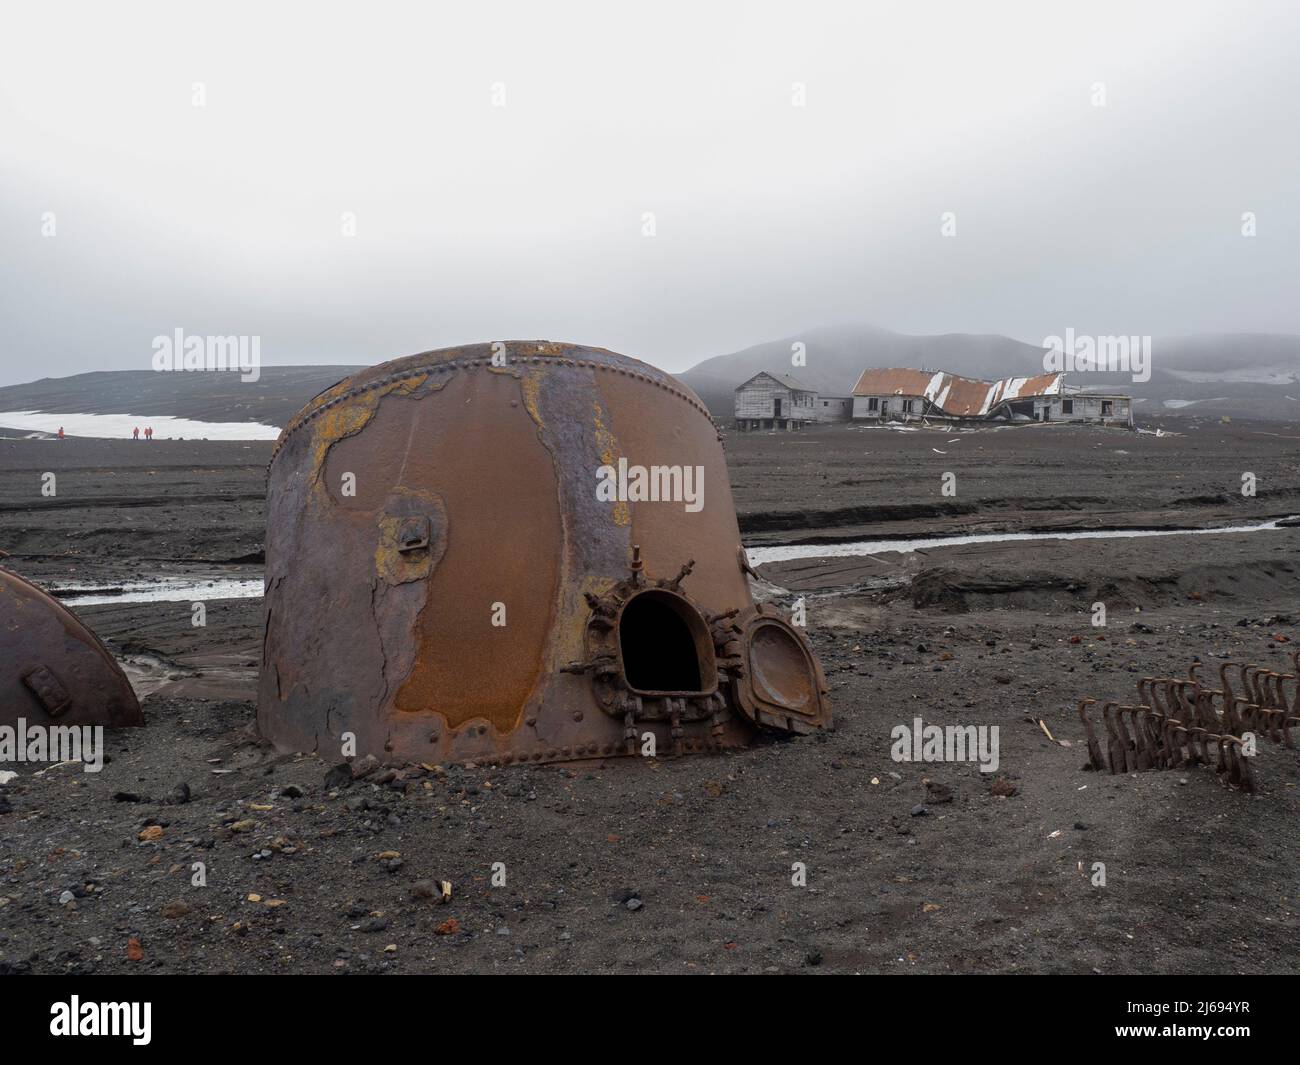 Les restes d'une ancienne station de chasse à la baleine à l'île de Deception, un volcan actif qui a éclaté pour la dernière fois en 1969, Antarctique, régions polaires Banque D'Images